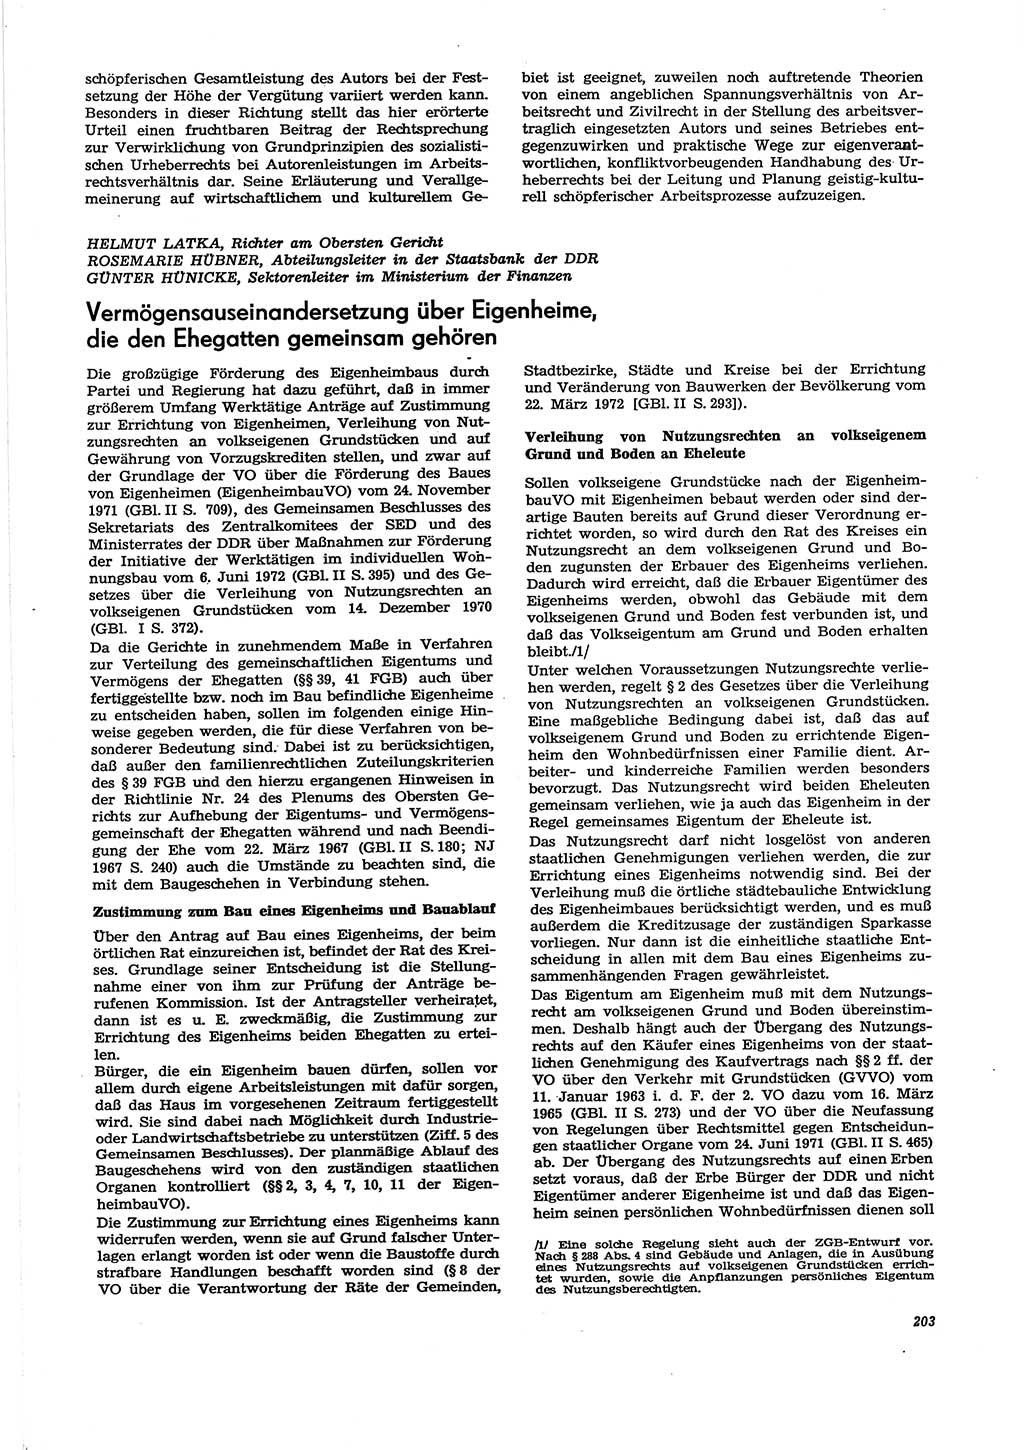 Neue Justiz (NJ), Zeitschrift für Recht und Rechtswissenschaft [Deutsche Demokratische Republik (DDR)], 29. Jahrgang 1975, Seite 203 (NJ DDR 1975, S. 203)